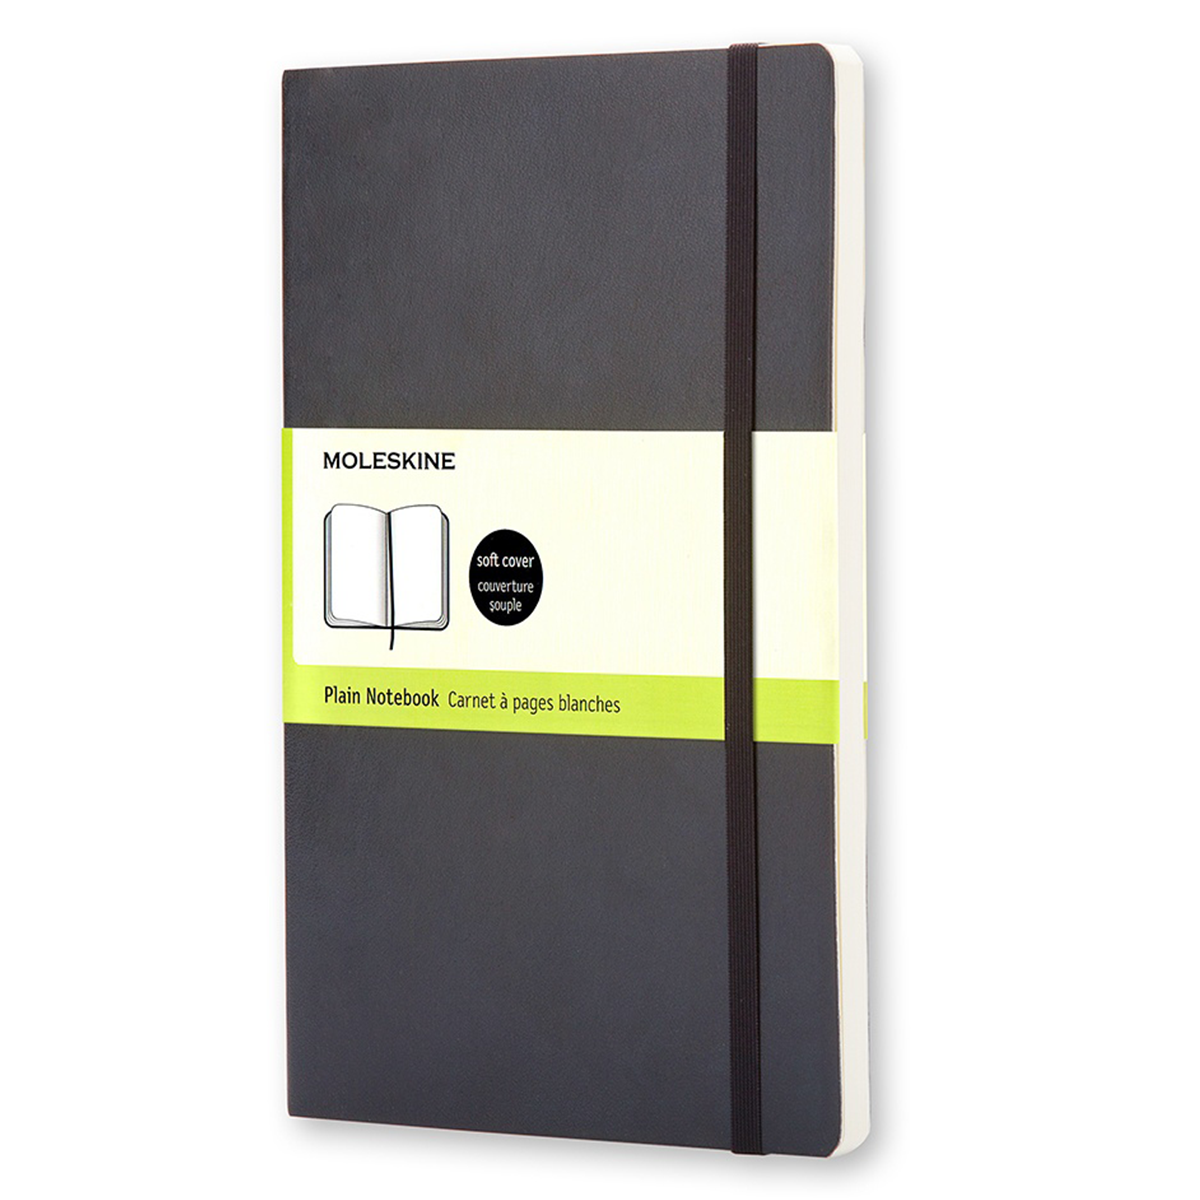 Moleskine Pocket Sketchbook Black Soft Cover  Penworld » More than 10.000  pens in stock, fast delivery